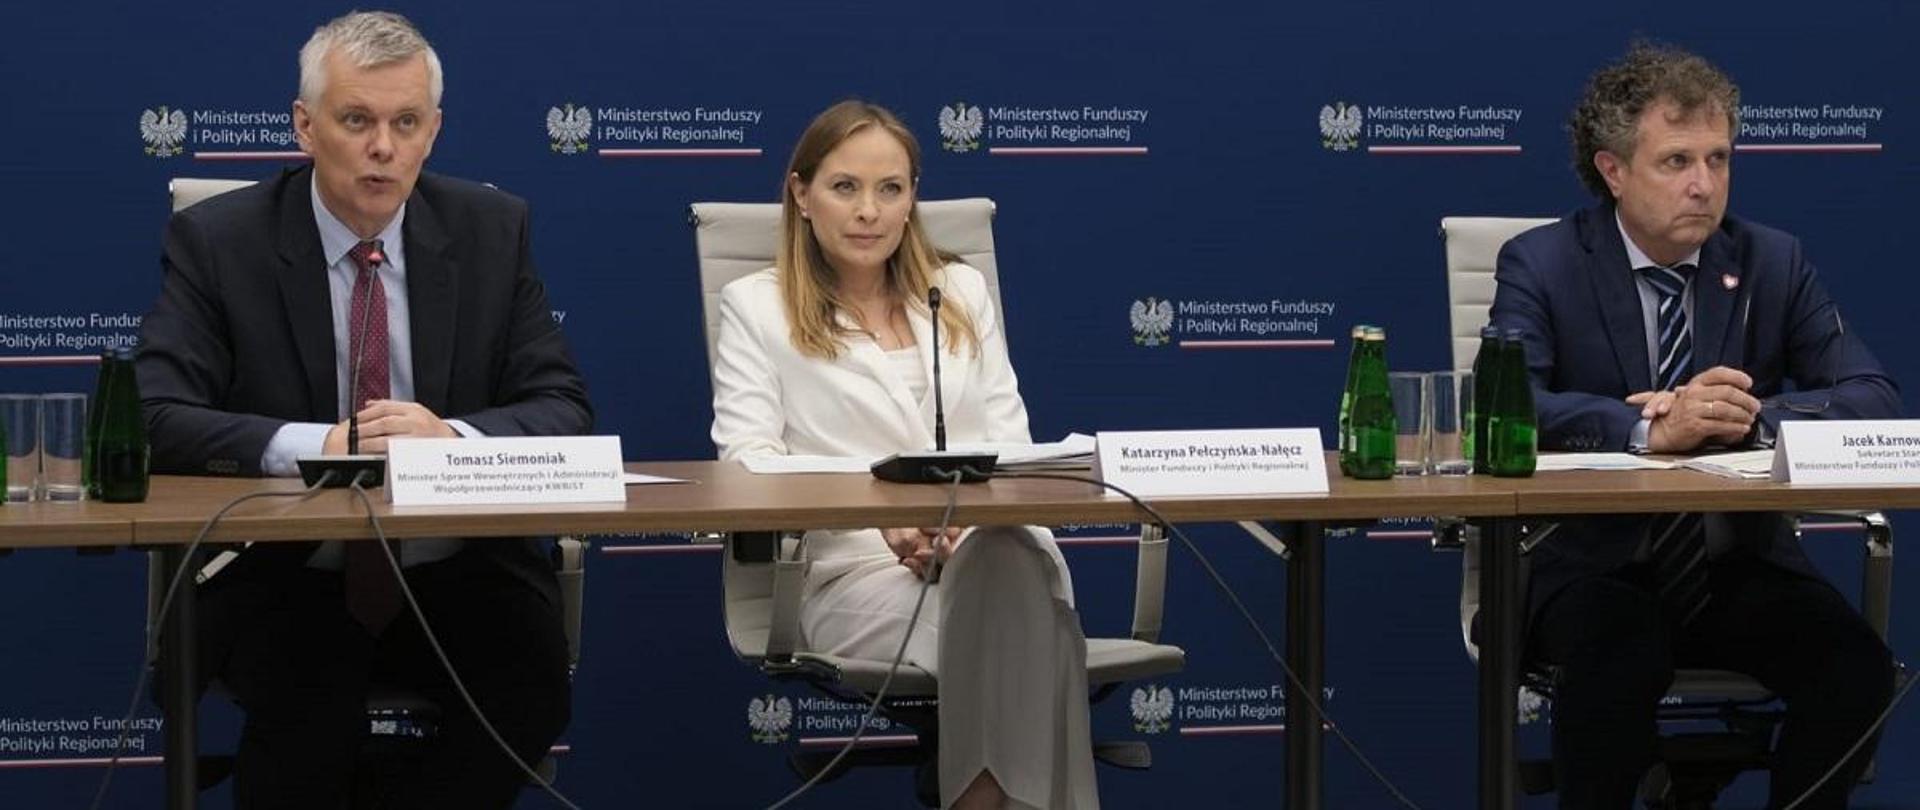 Minister funduszy i polityki regionalnej Katarzyna Pełczyńska-Nałęcz siedzi przy stole, po jej prawej stronie siedzi minister spraw wewnętrznych i administracji Tomasz Siemoniak, zaś po lewej jest wiceminister funduszy i polityki regionalnej Jacek Karnowski